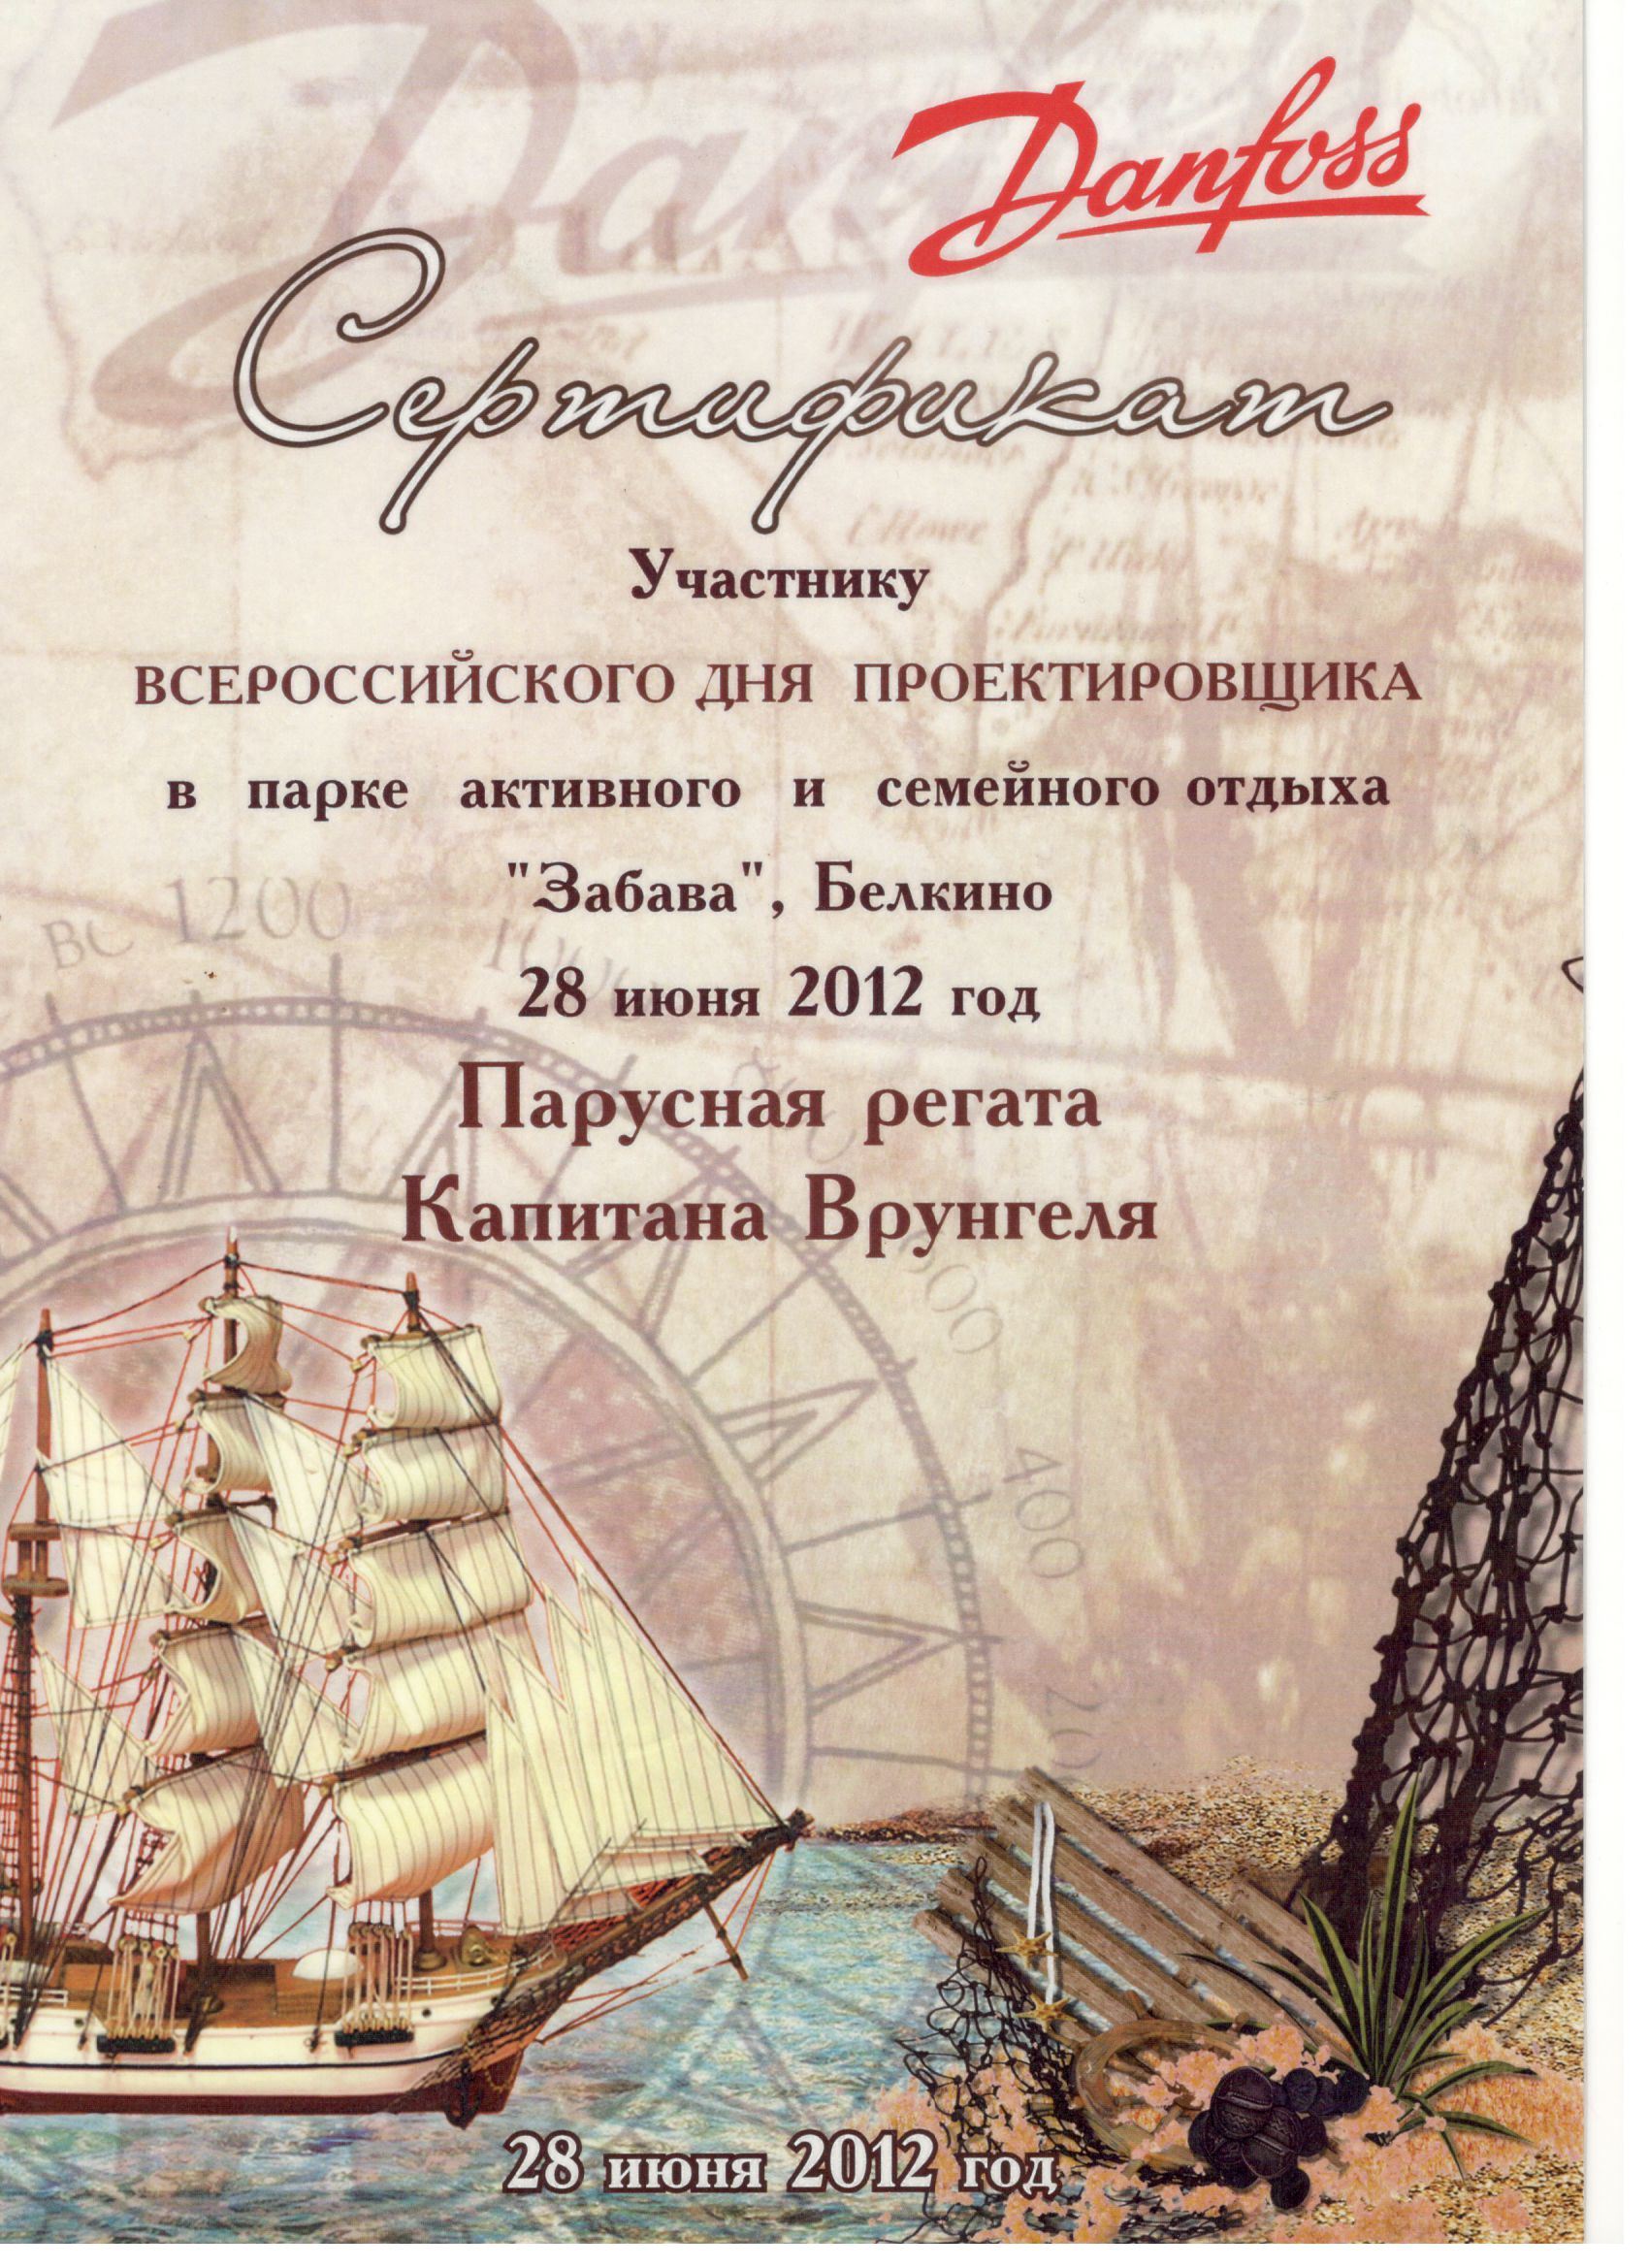 Сертификат участника всероссийского дня проектировщика, 2012 г.